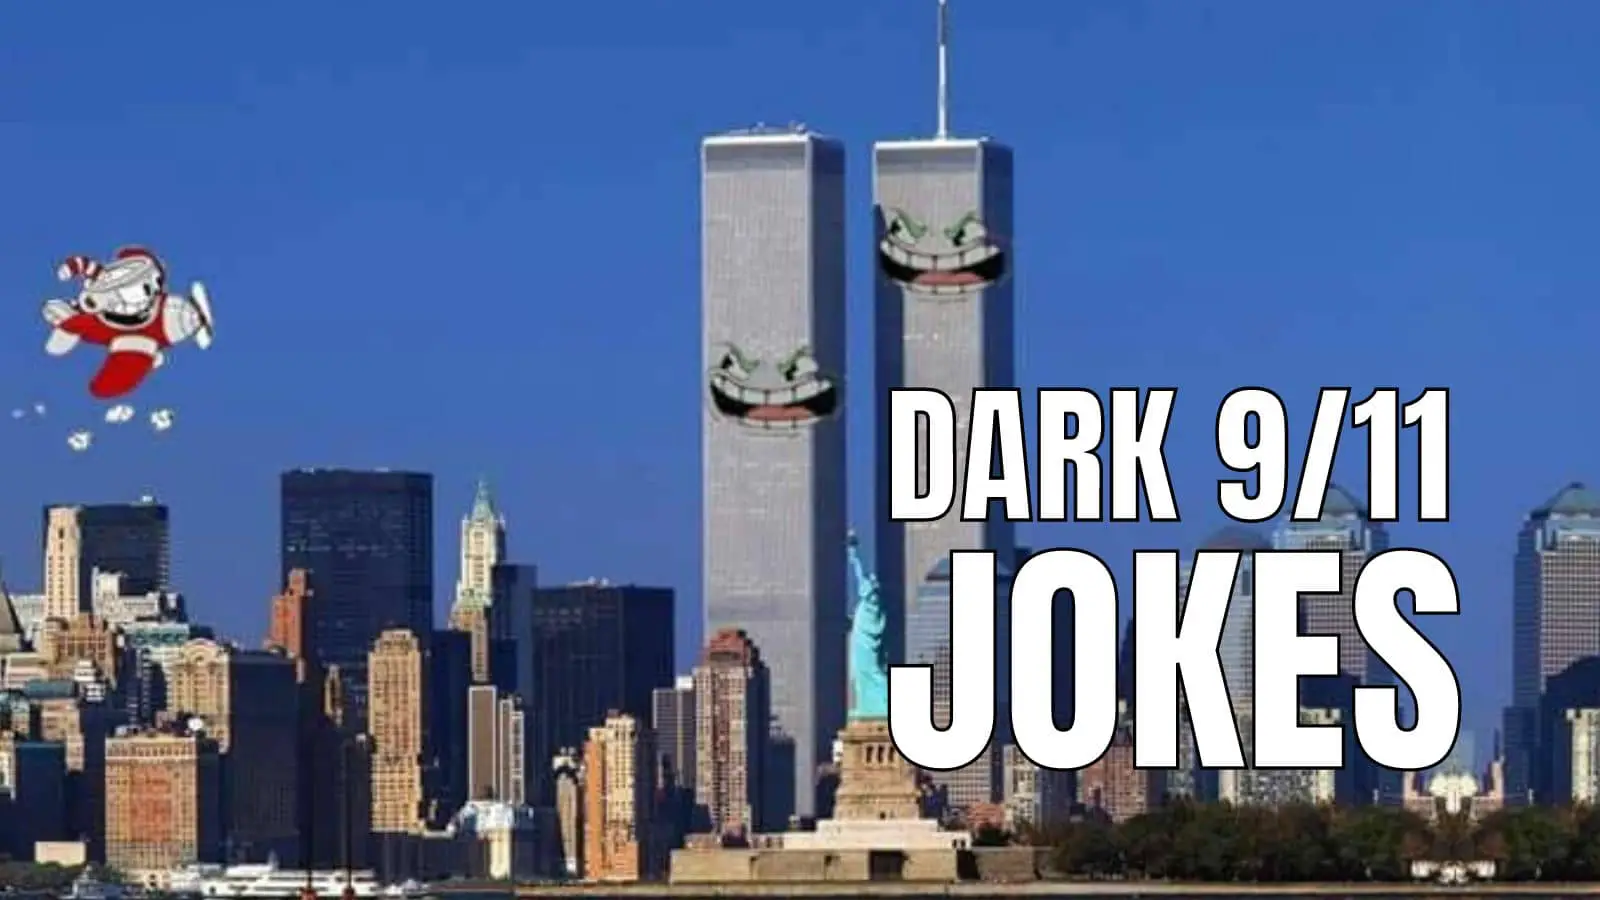 Dark 911 Jokes on Twin Towers